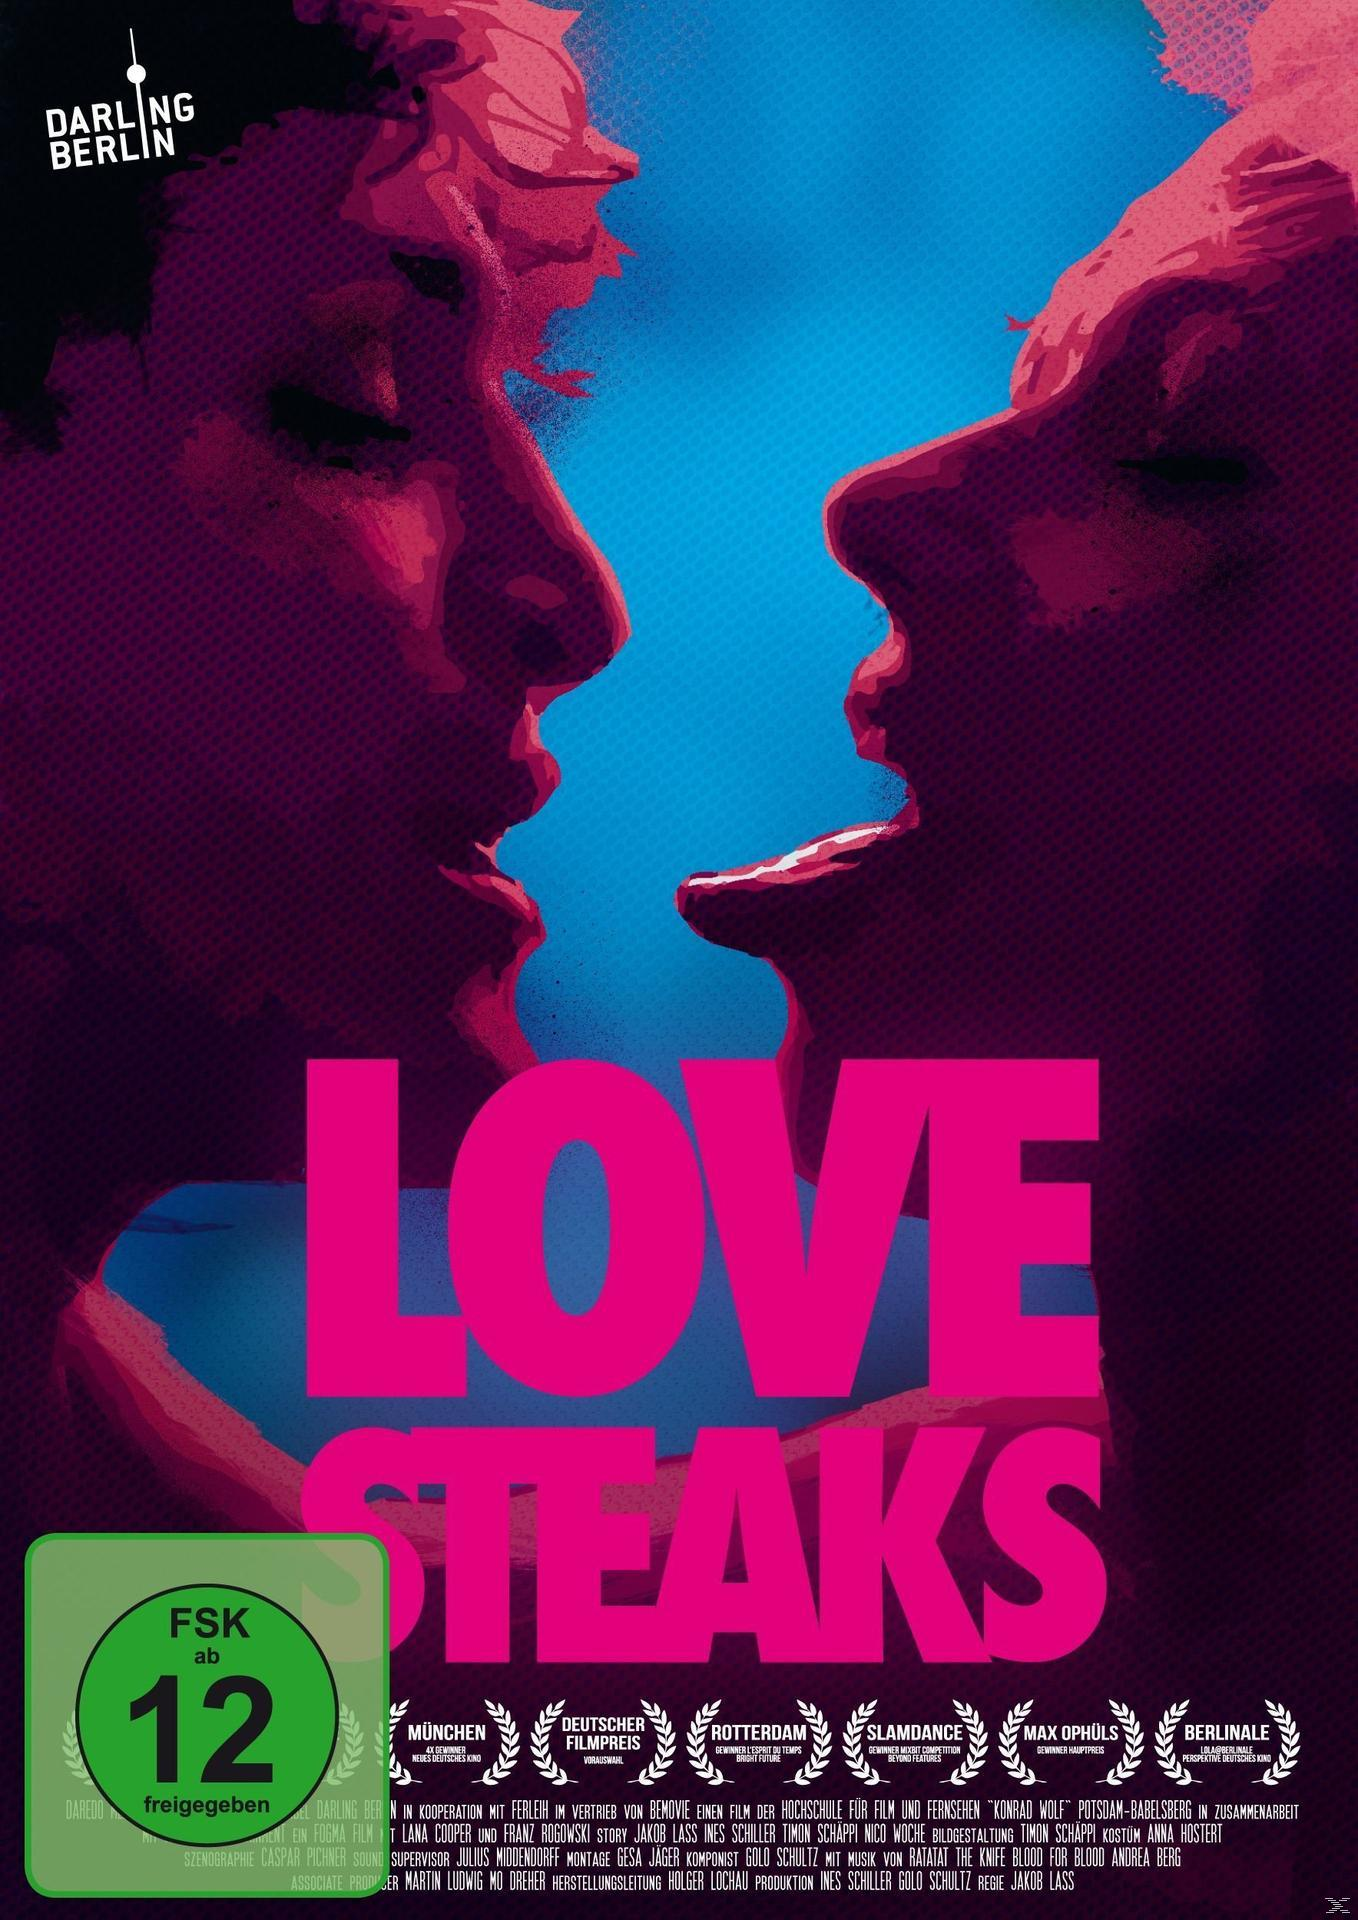 LOVE DVD STEAKS